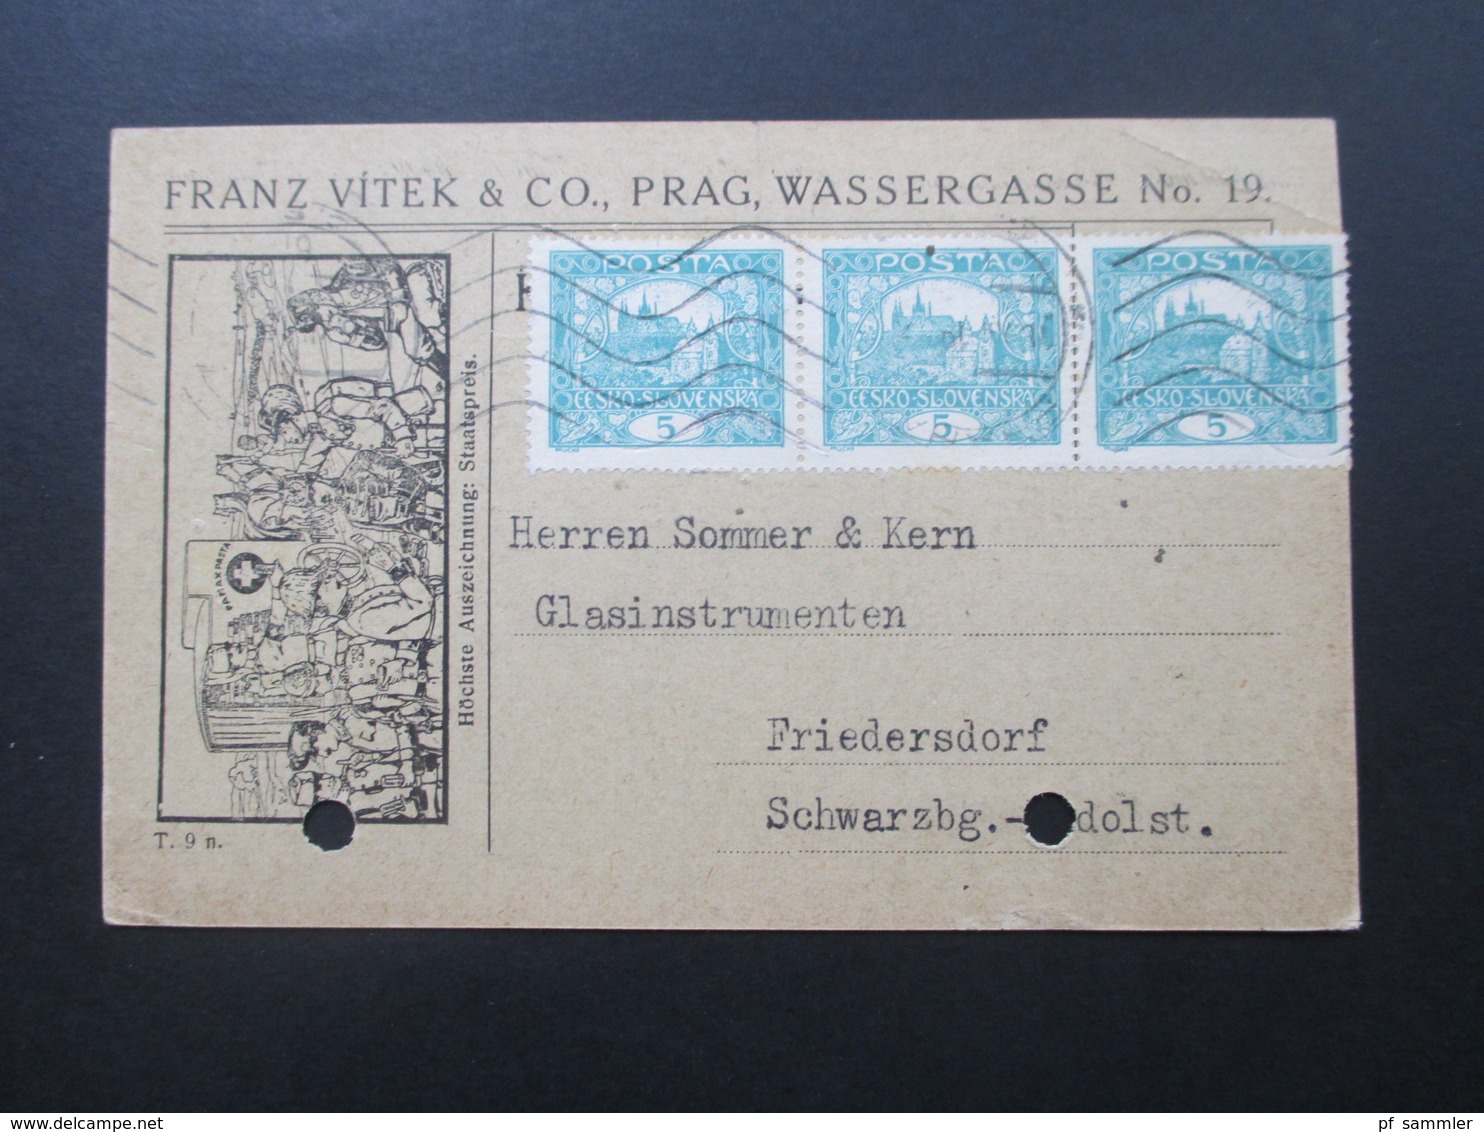 Tschechoslowakei 1919 Firmenkarte Mit Karikatur / Zeichnung Höchste Auszeichnung Staatspreis. Franz Vitek Prag - Covers & Documents